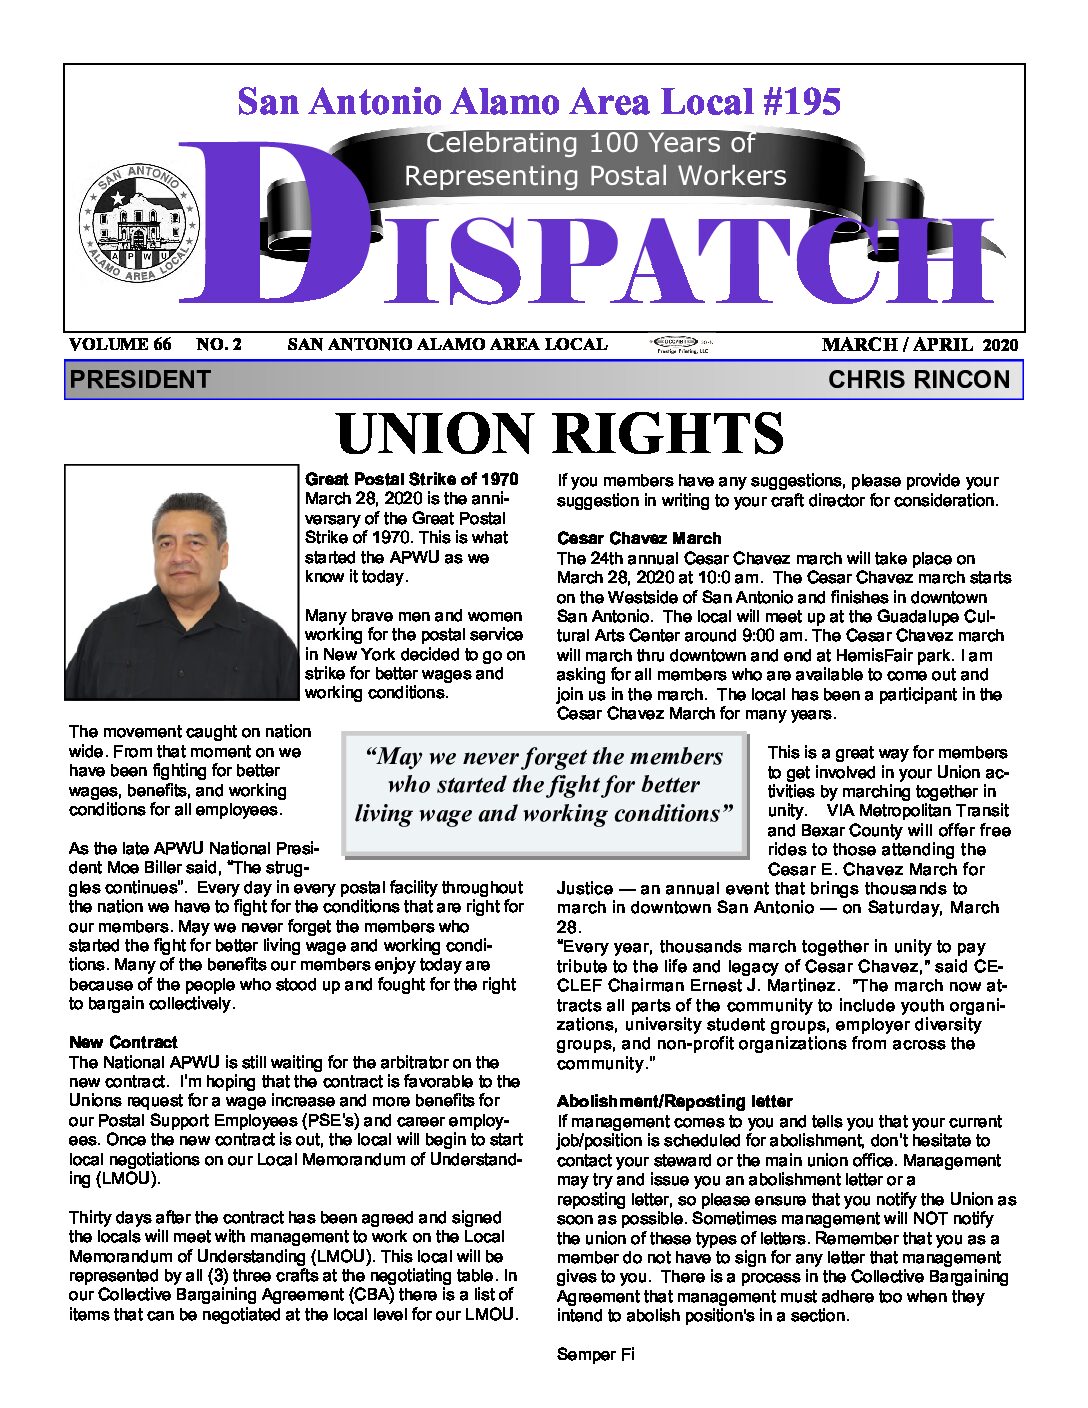 March-April ’20 Dispatch - 